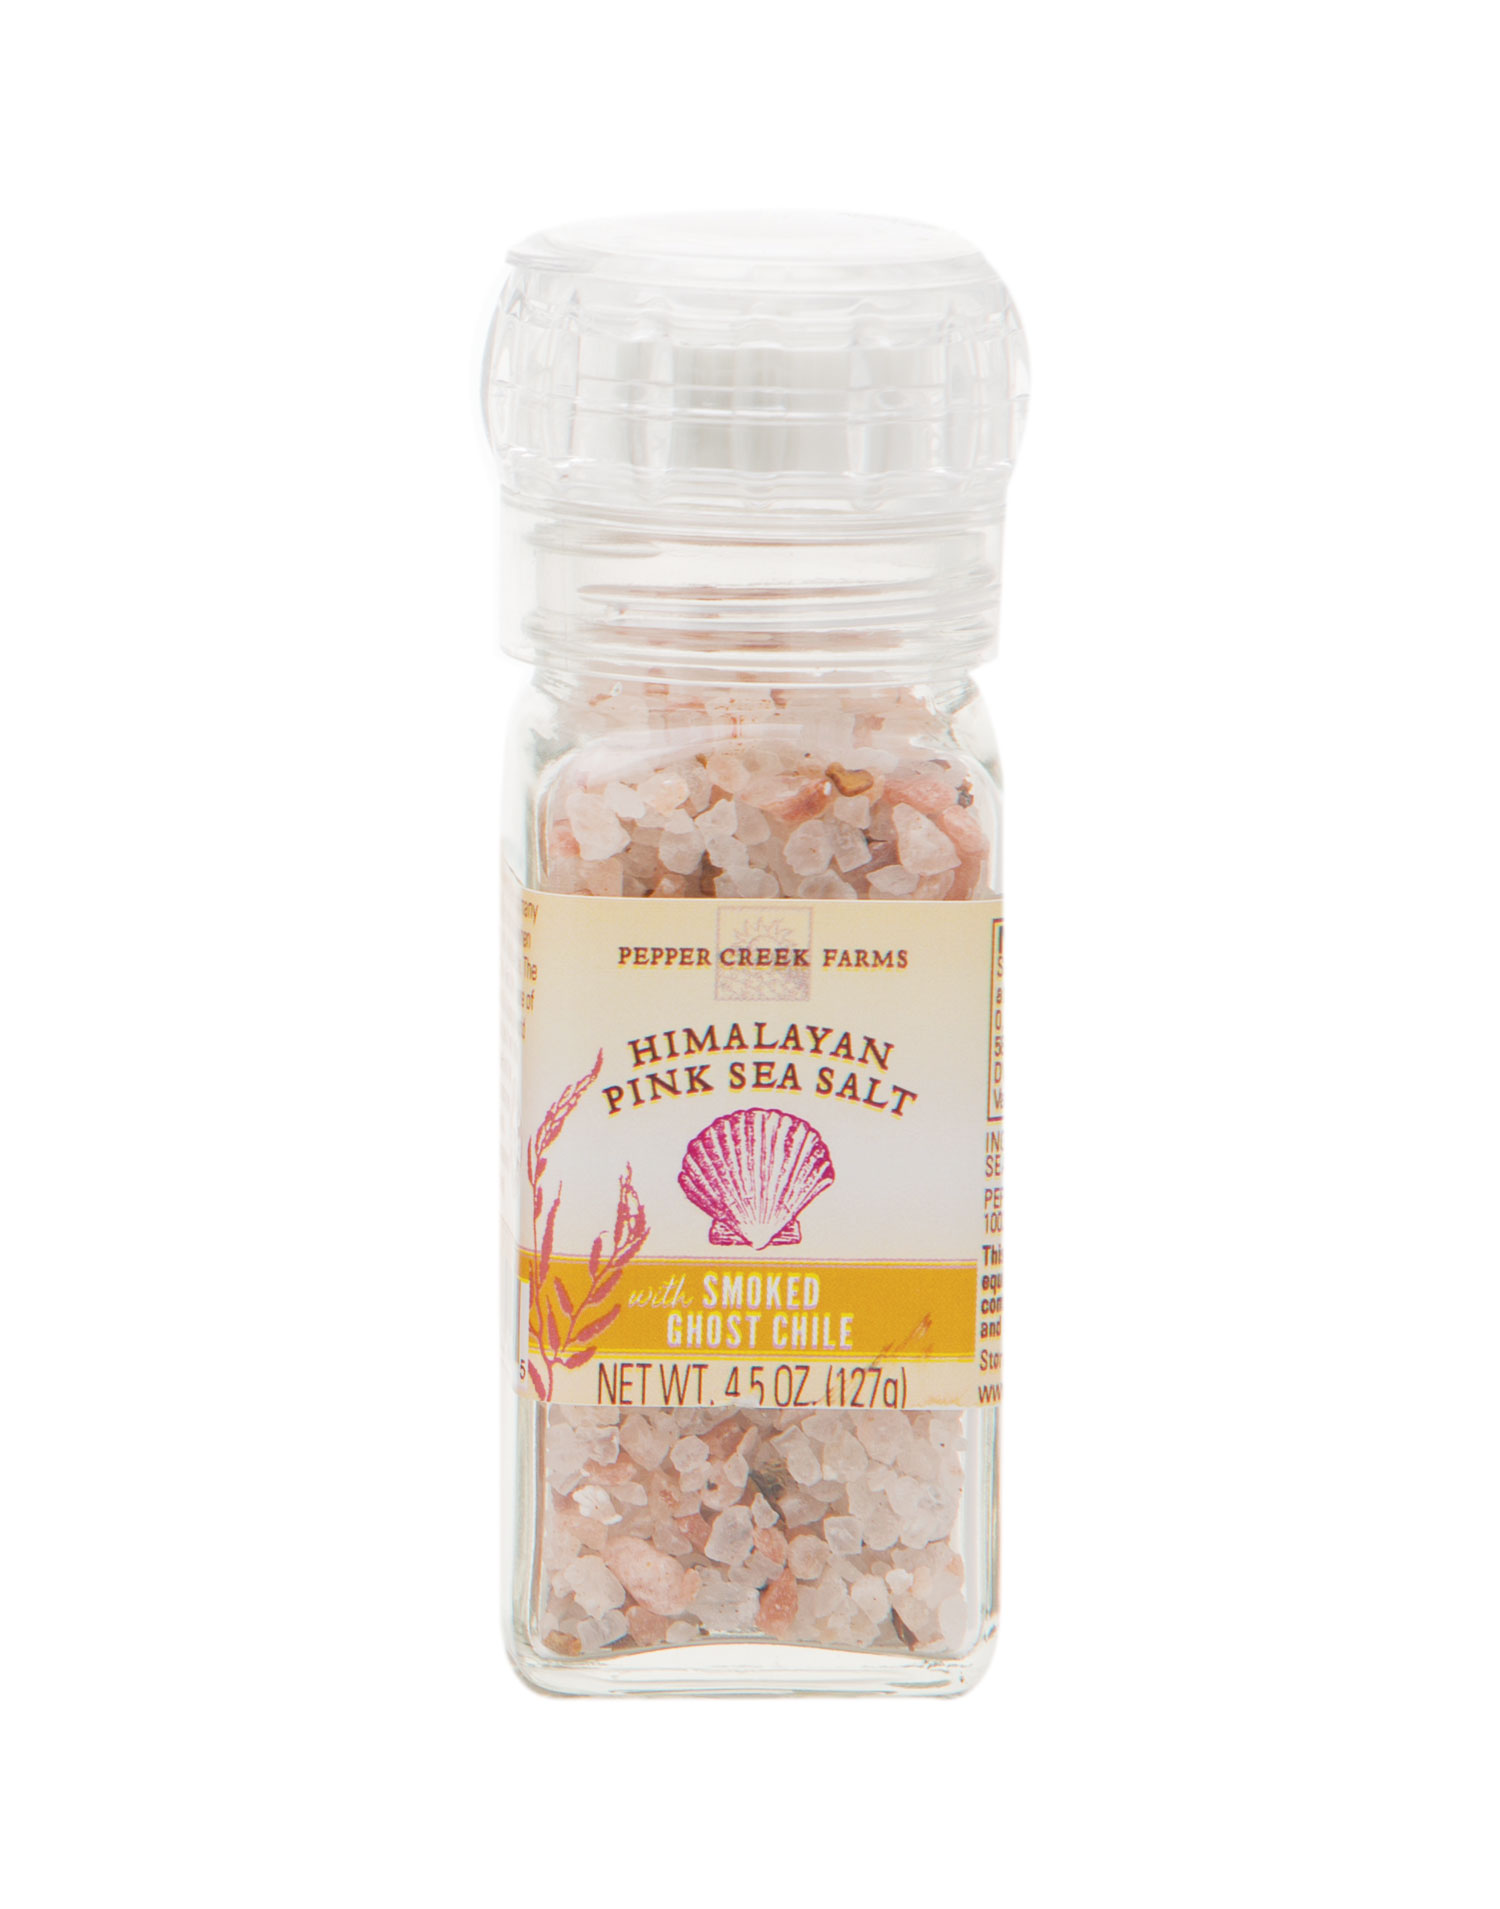 Schwartz Pink Himalayan Salt Grinder 71g